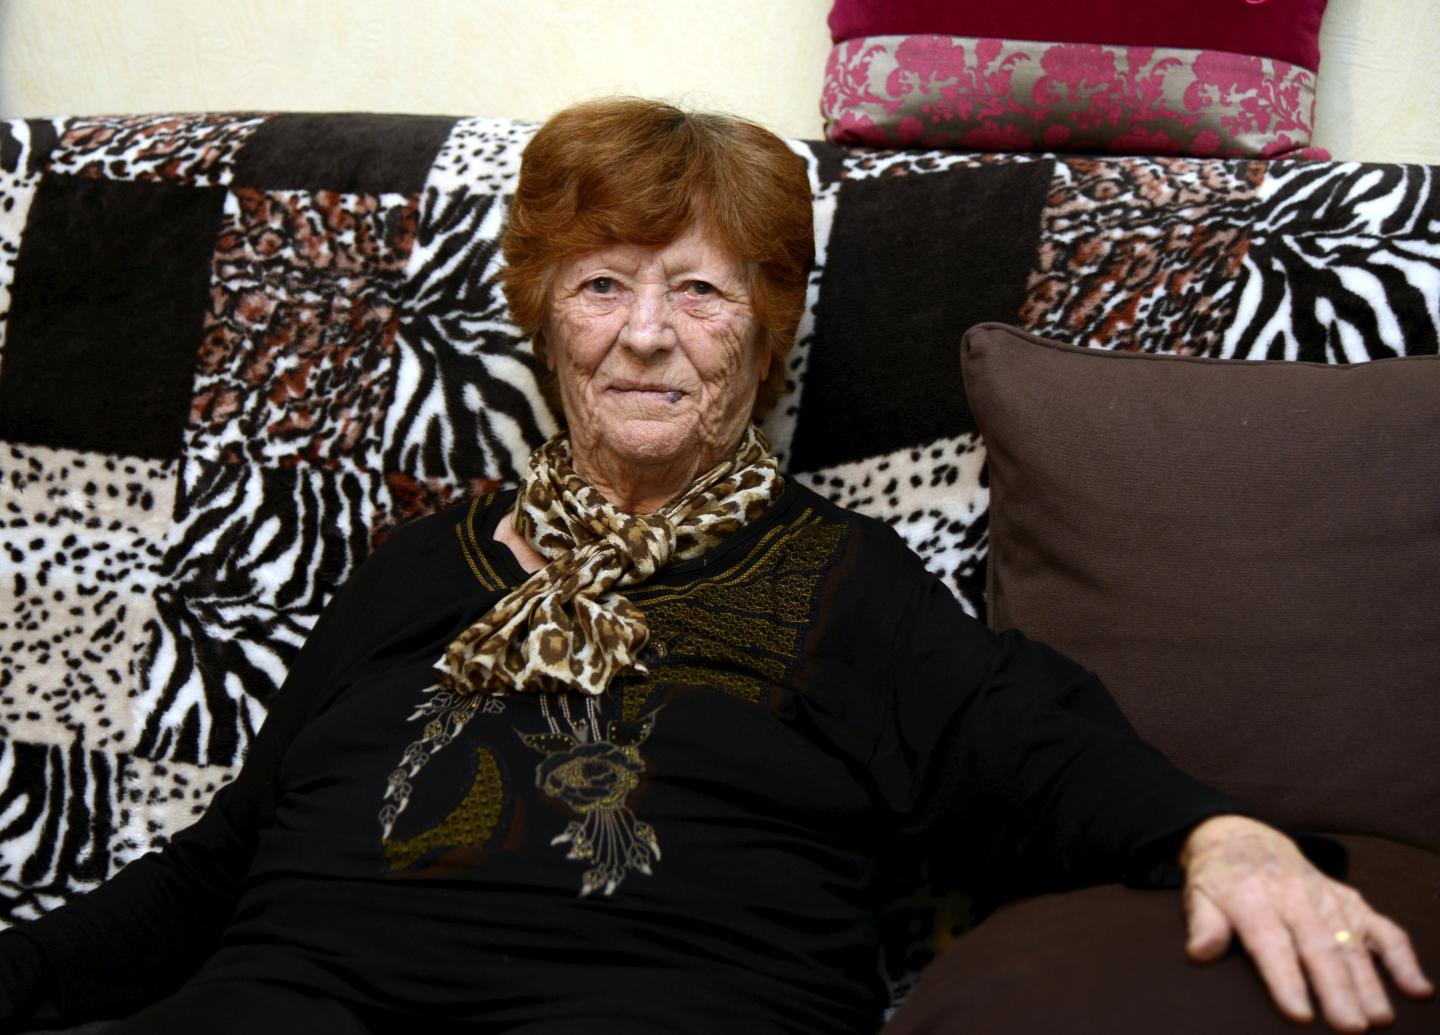 La patiente implantée, Rosaria D'Andreano, 82 ans, avoue "ne pas avoir eu mal".